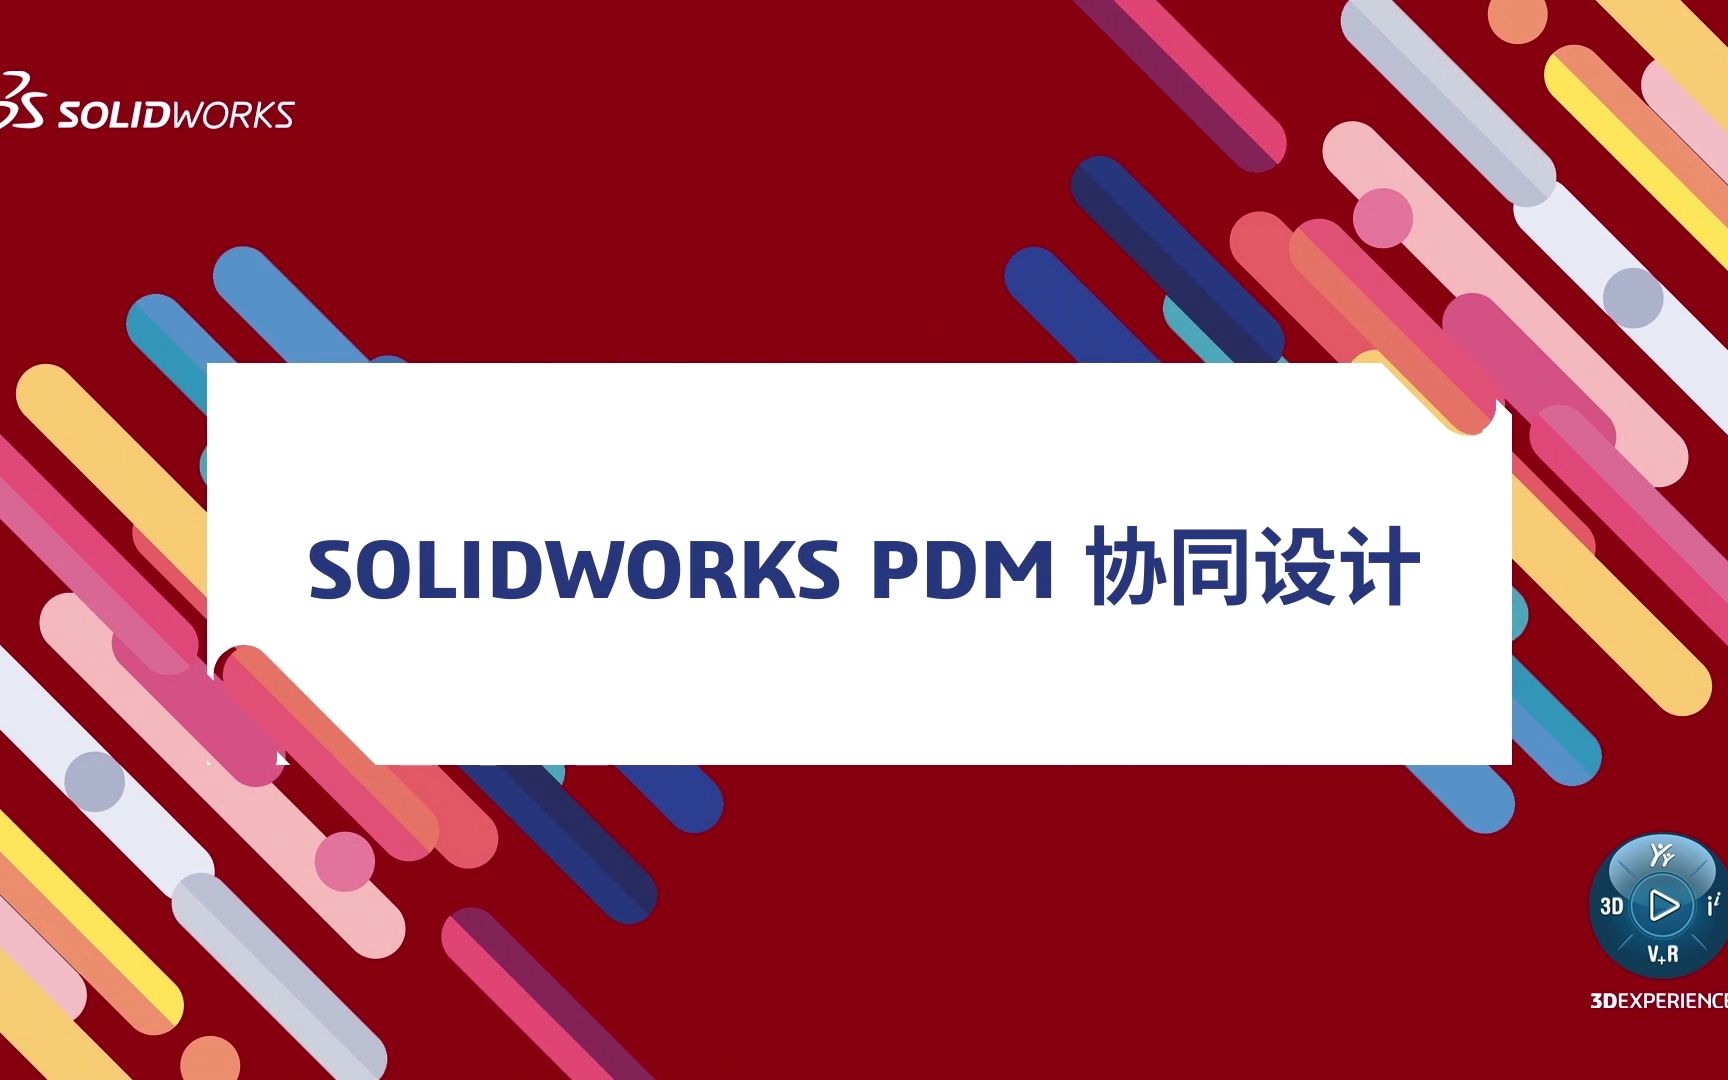 SOLIDWORKS PDM.jpg